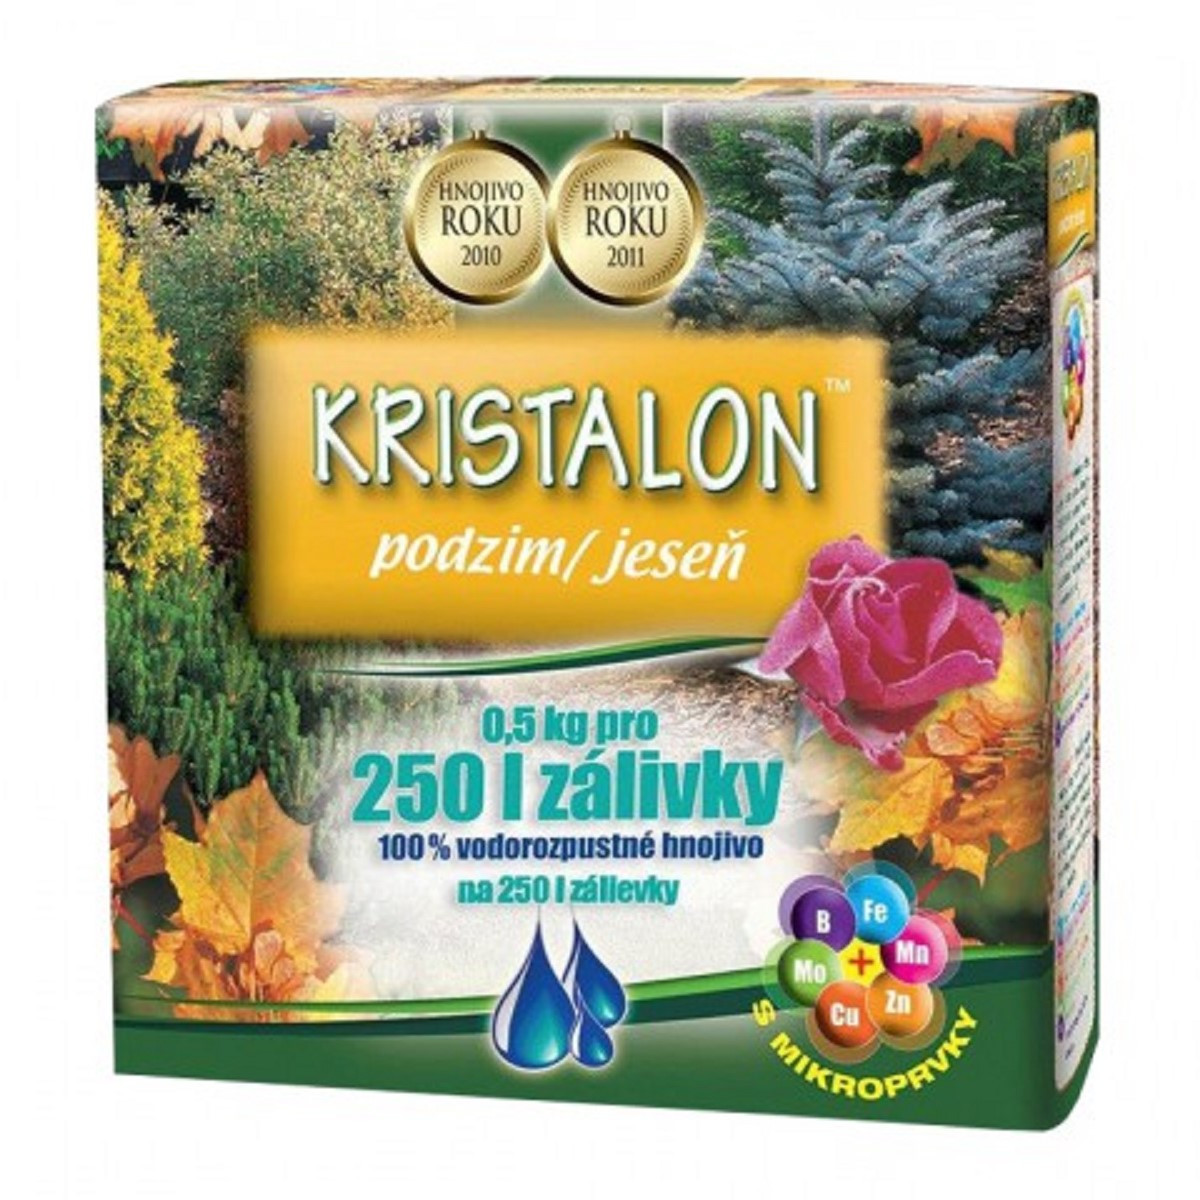 Kristalon Podzim - Agro - pevné hnojivo - 0,5 kg